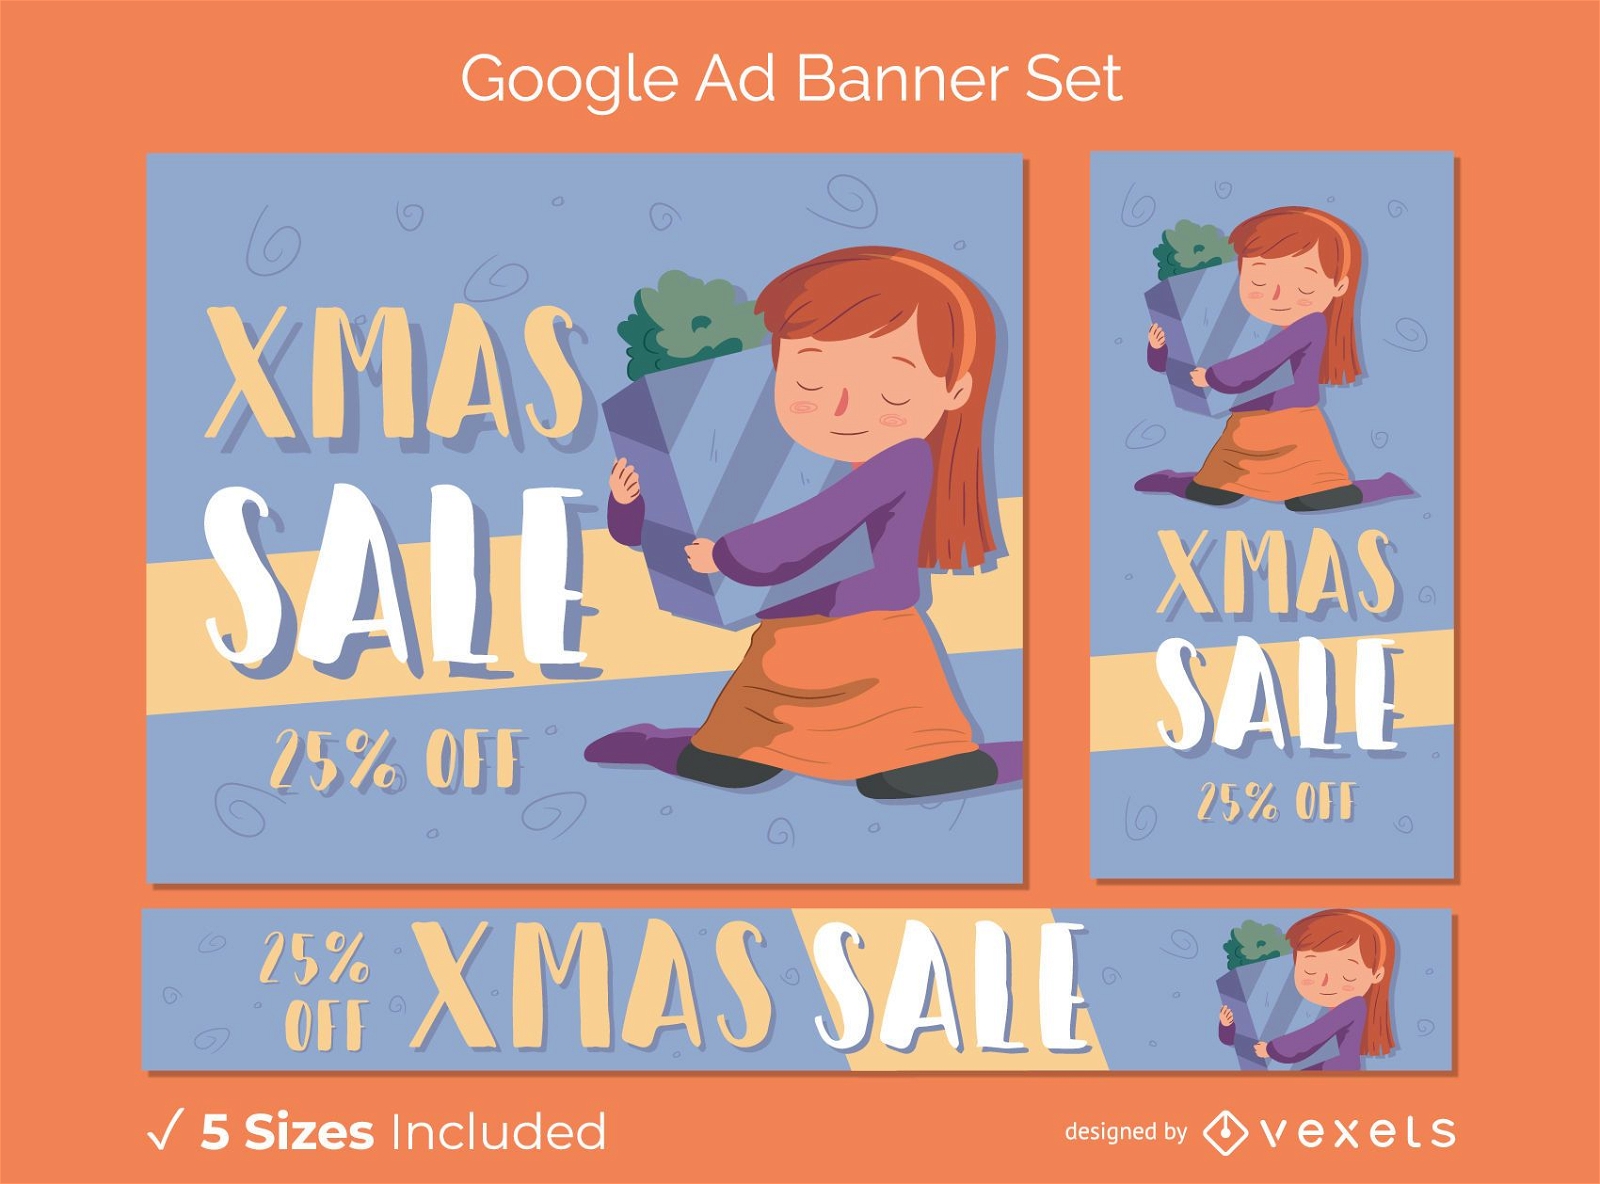 Venta de navidad banners publicitarios de google